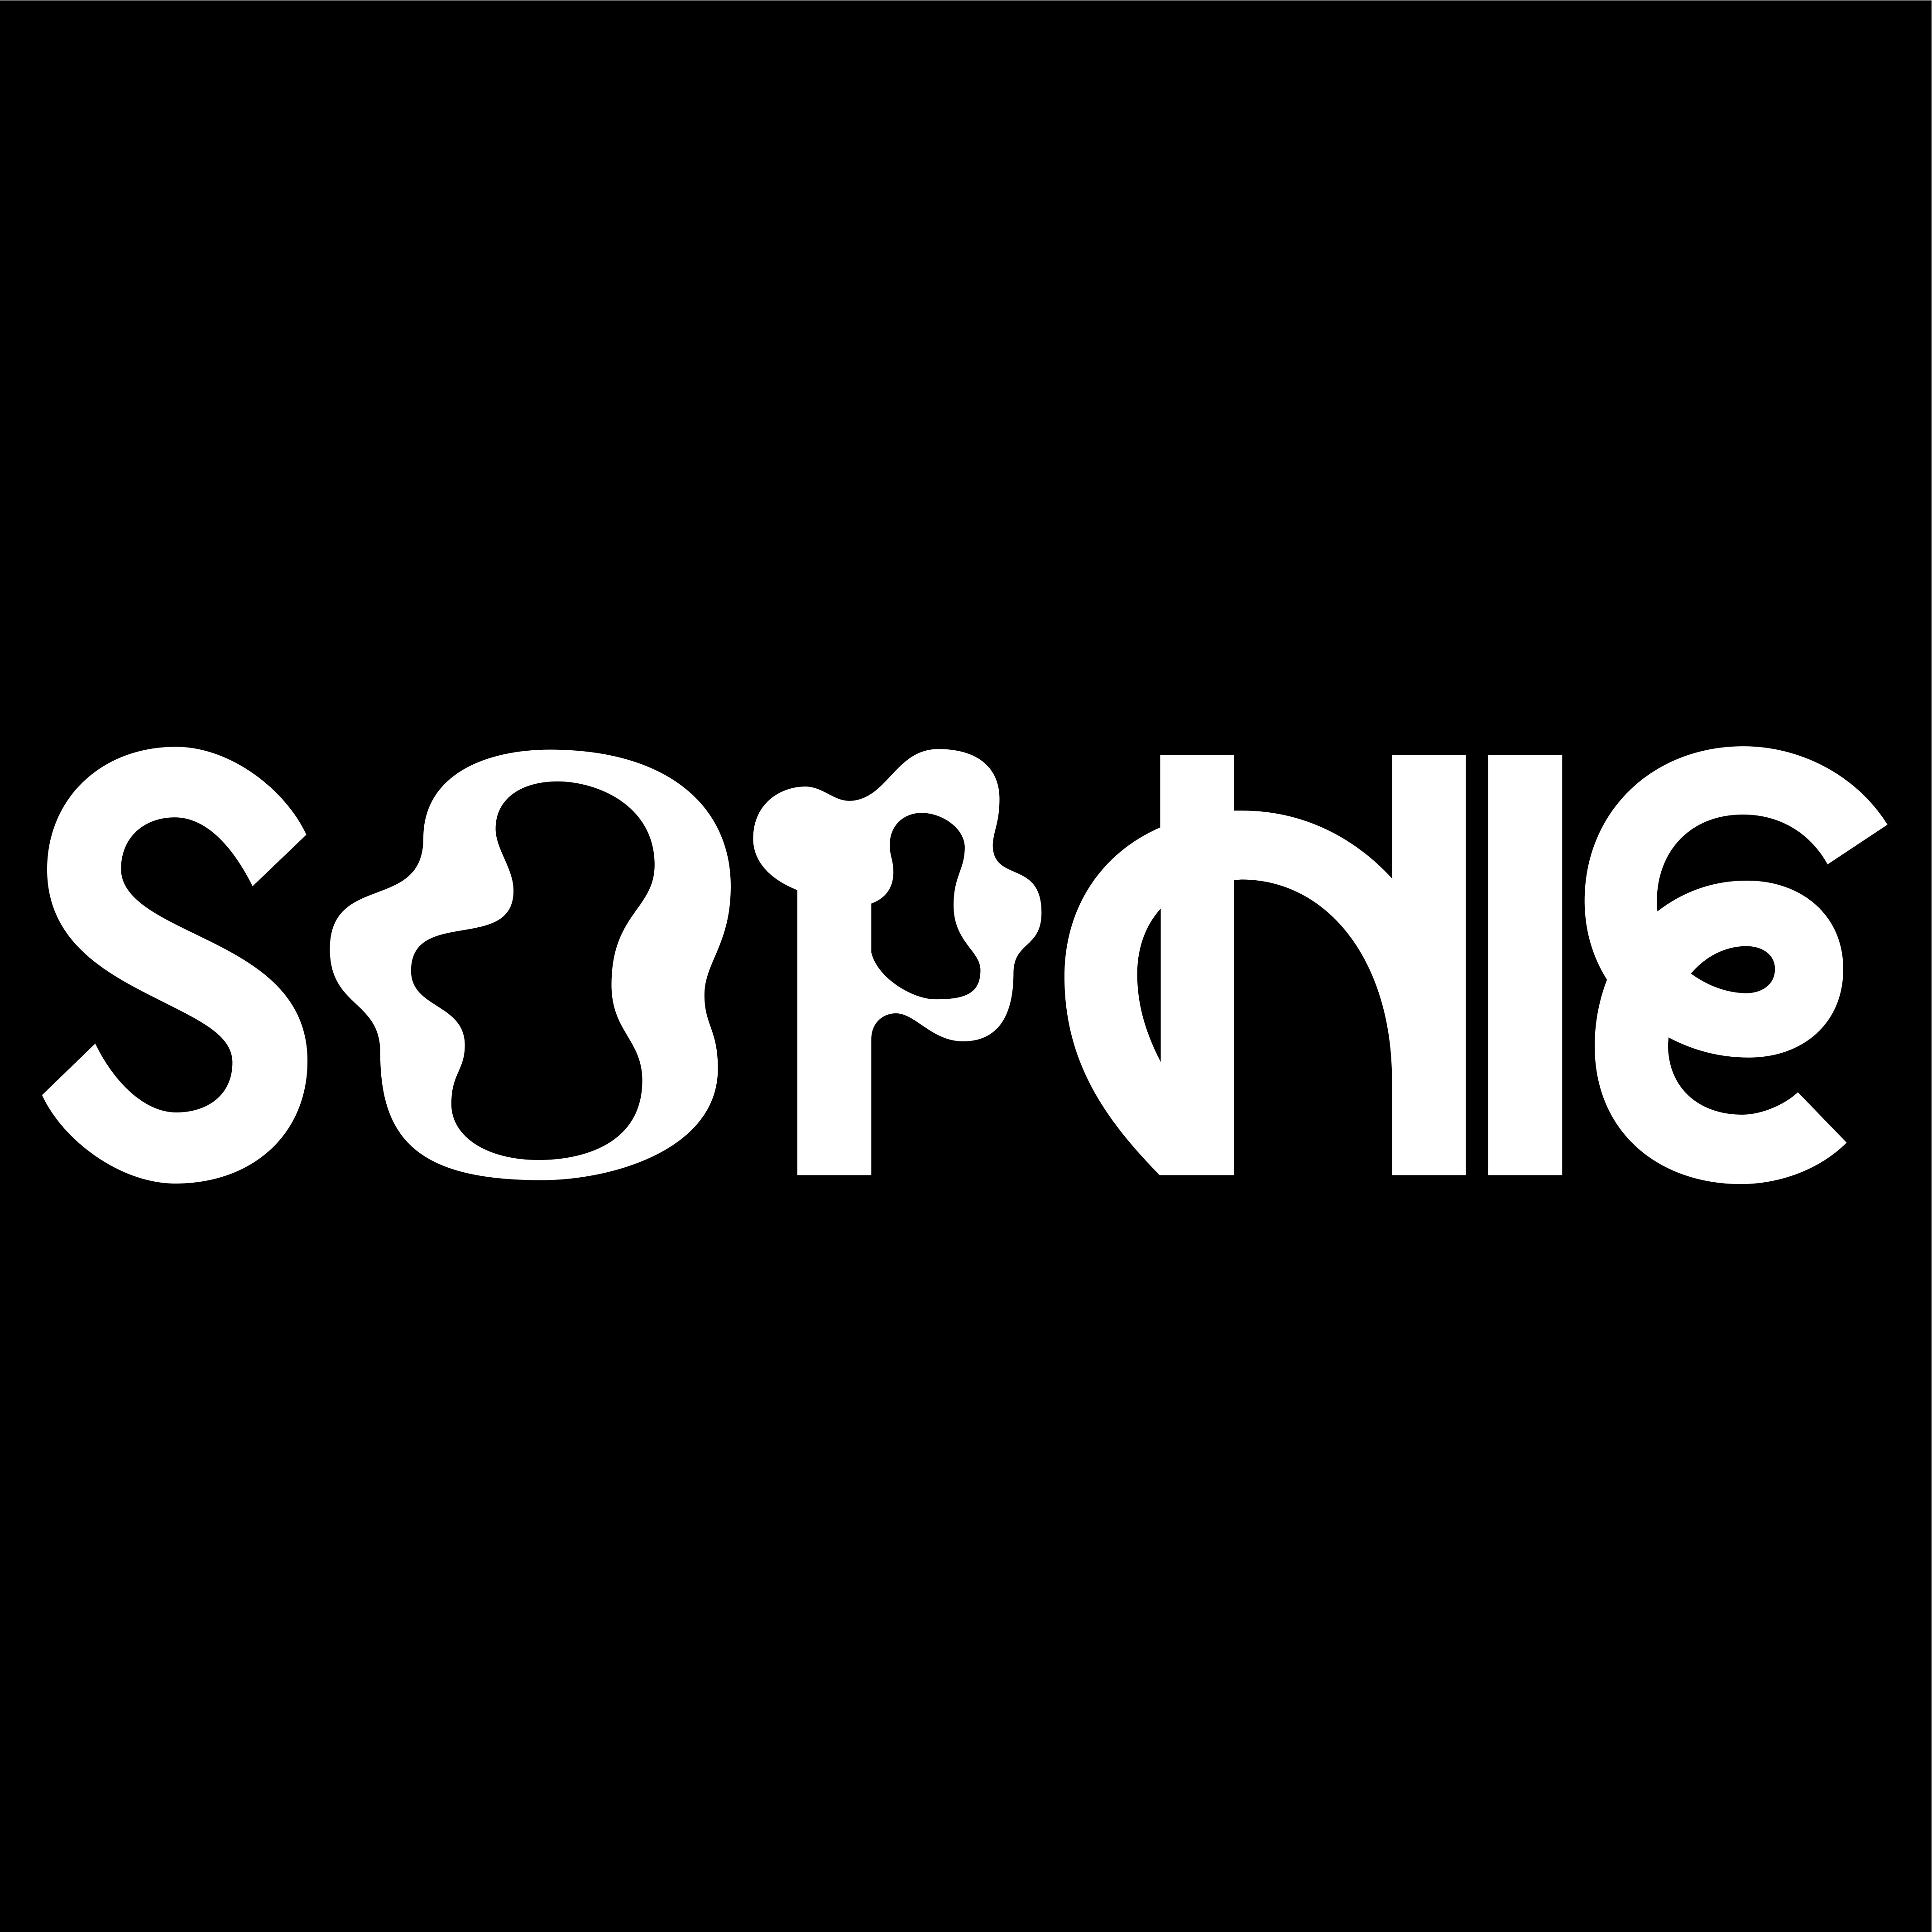 ڈاؤن لوڈ کریں FMM: SOPHIE - EEEHHH/Nothing More To Say